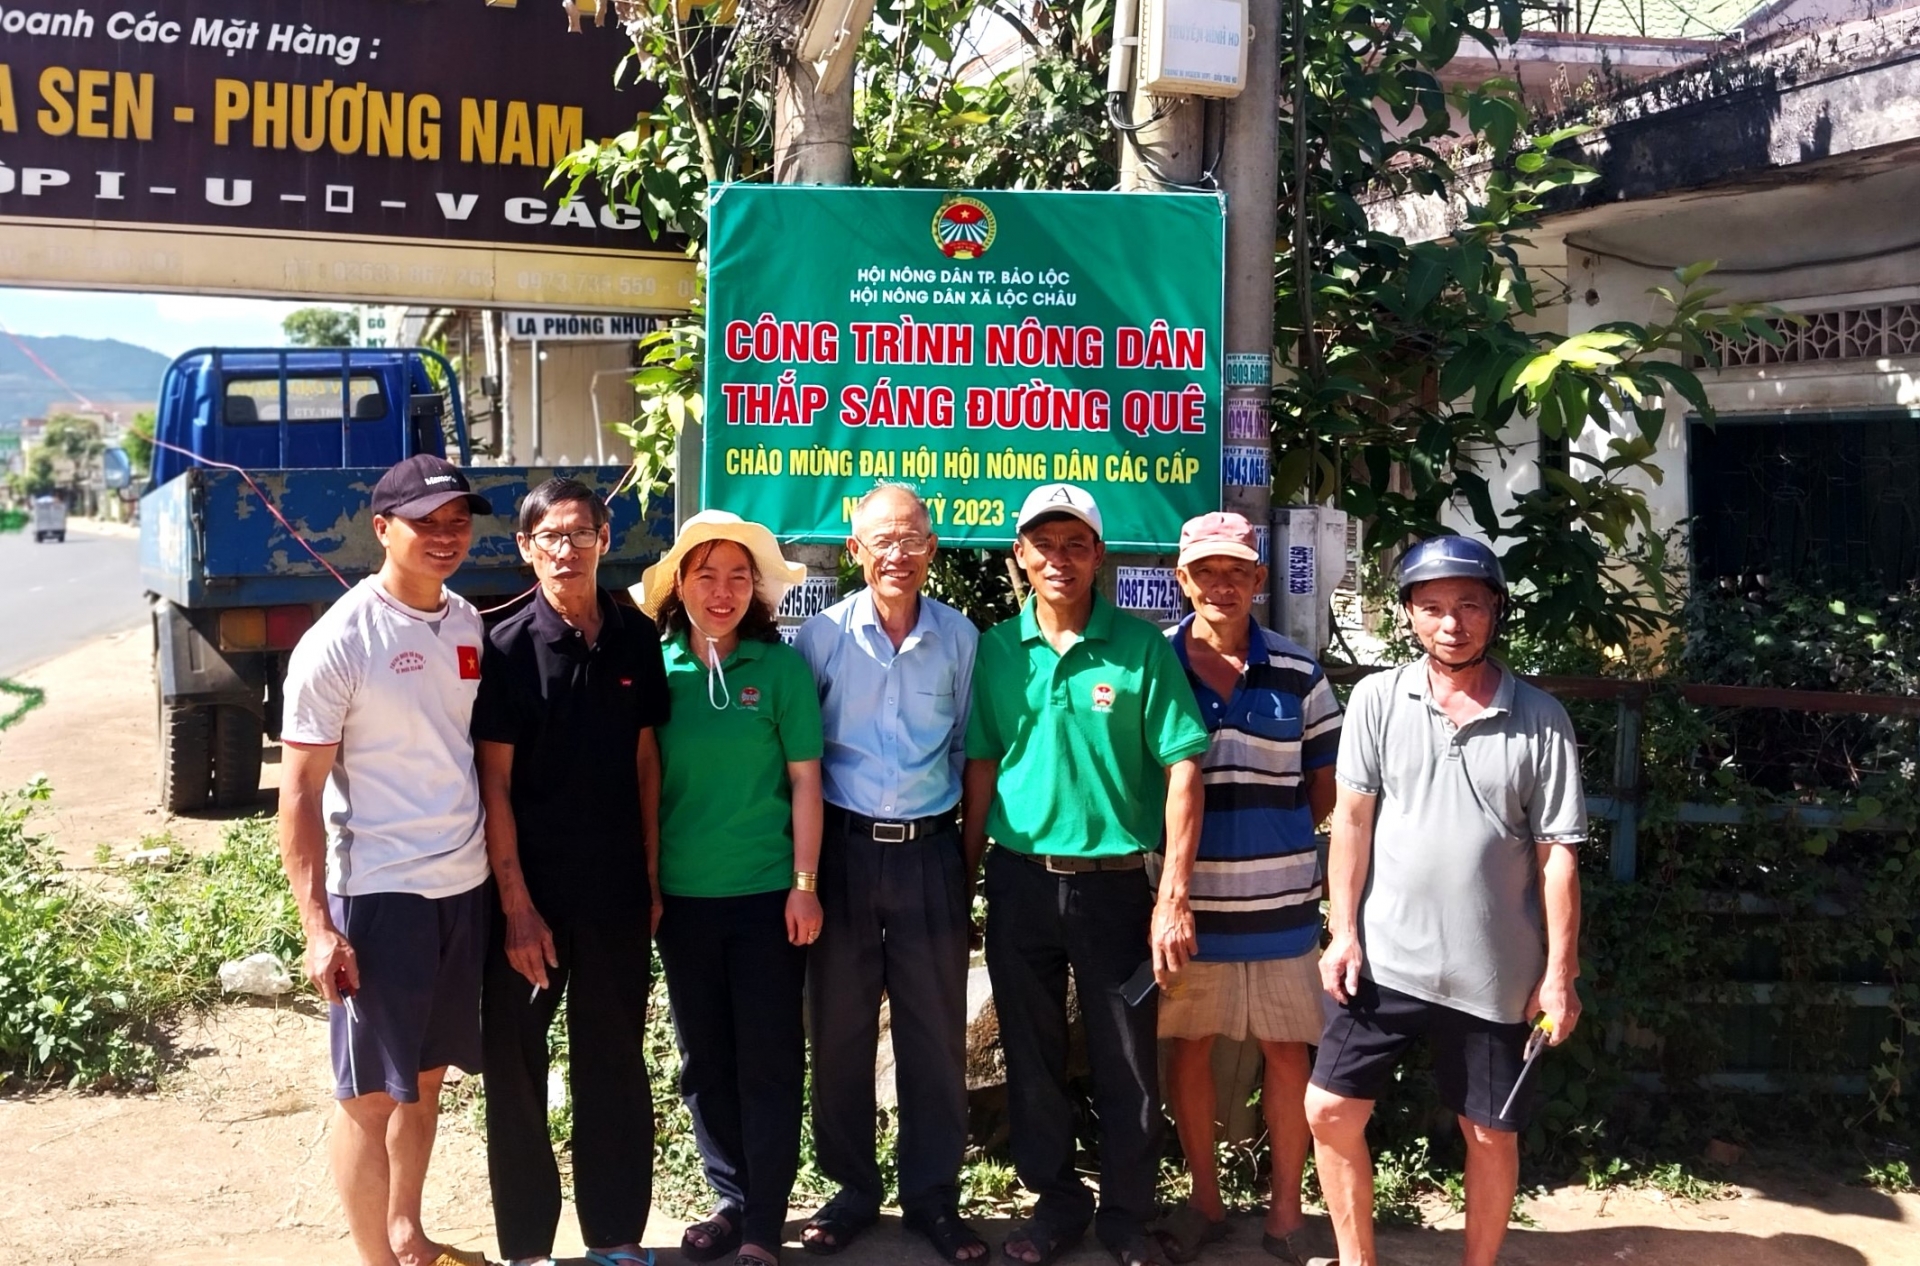 Hội Nông dân TP Bảo Lộc và các cấp hội bàn giao công trình thắp sáng đường quê